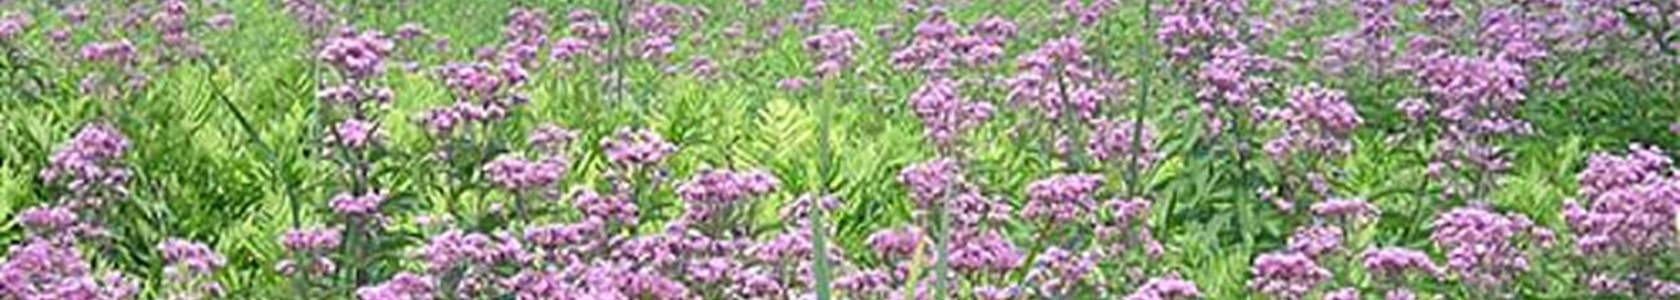 Field with purple flowers